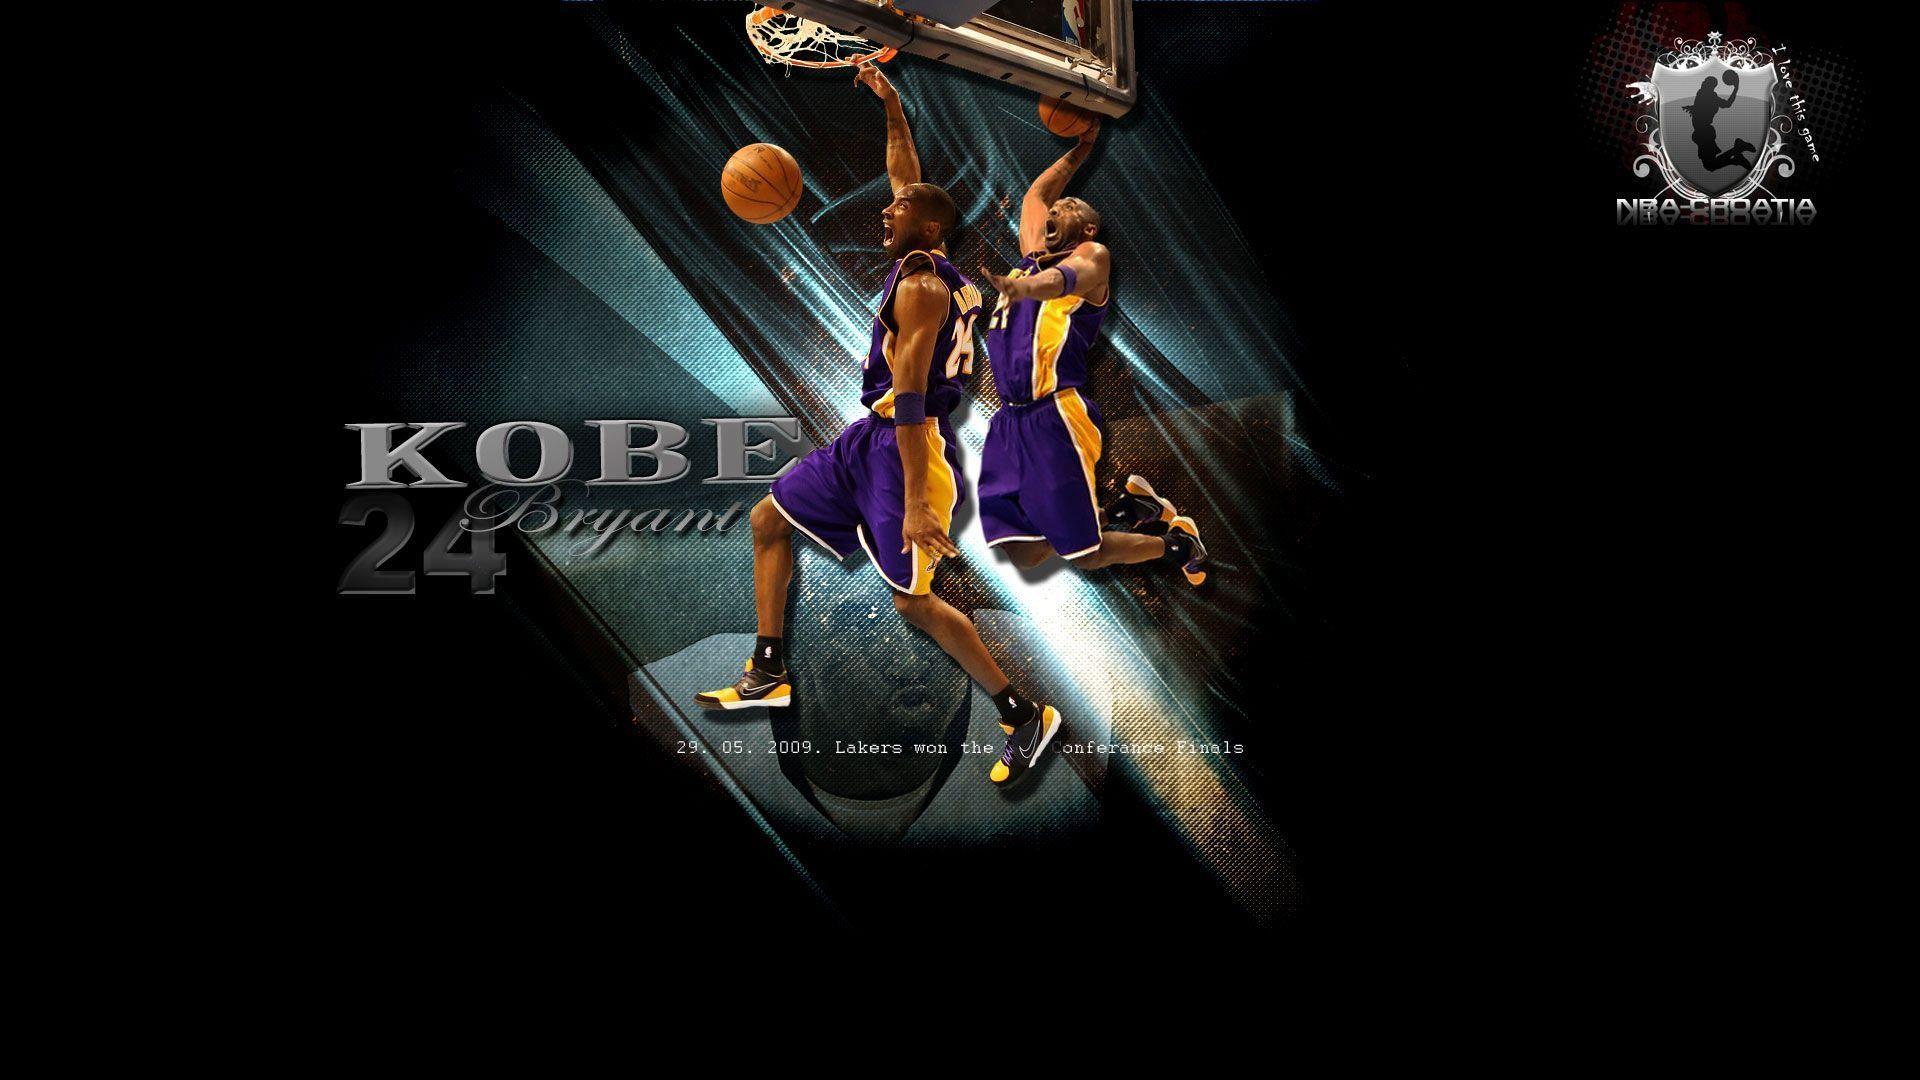 Lakers wallpaper